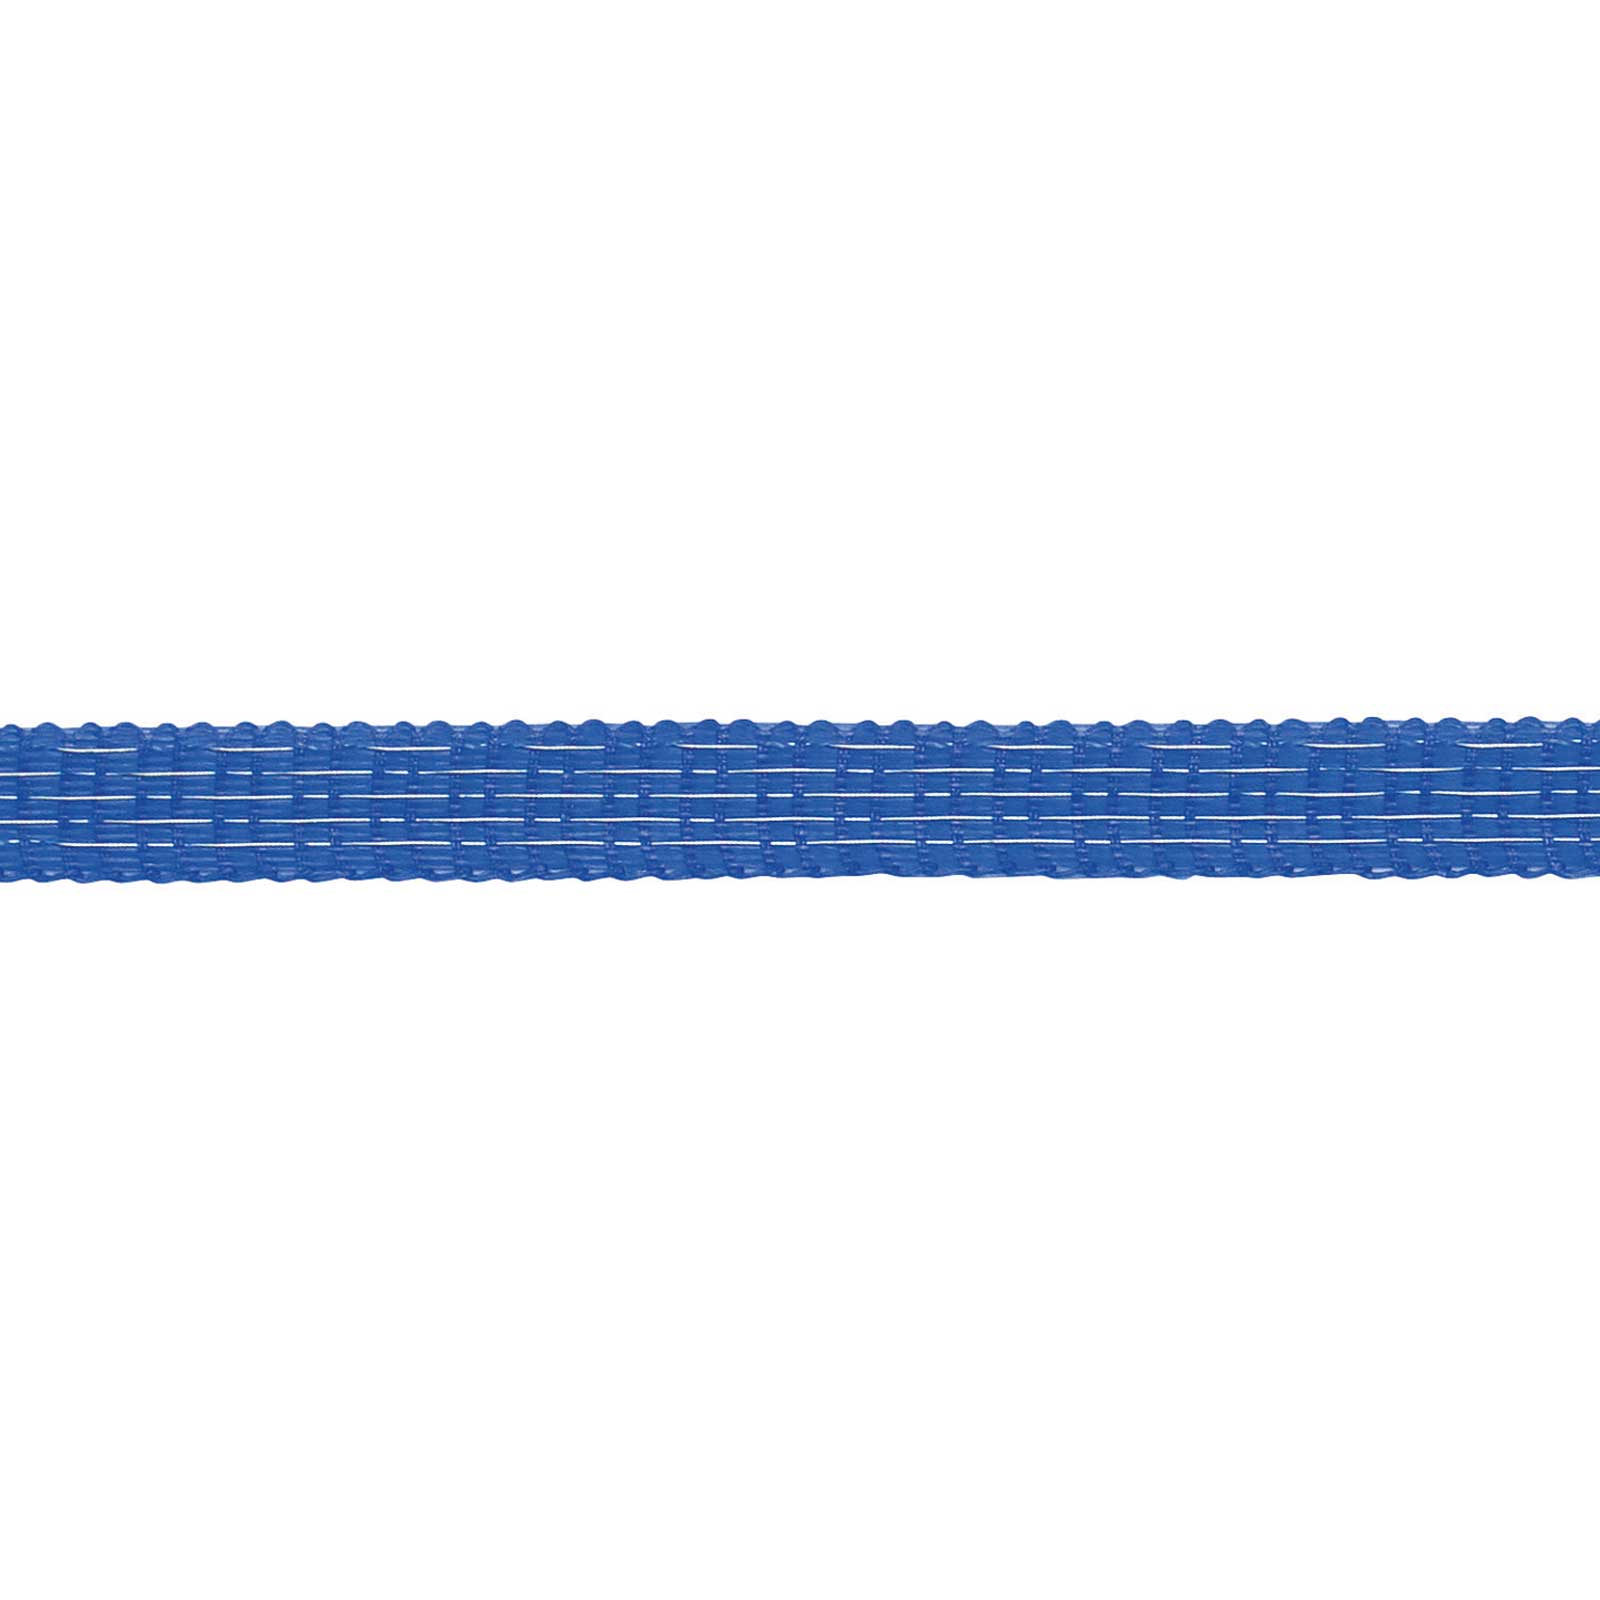 AKO Betesstängselband TopLine Plus 200 m, 0,30 TriCOND, blått 200 m x 10 mm